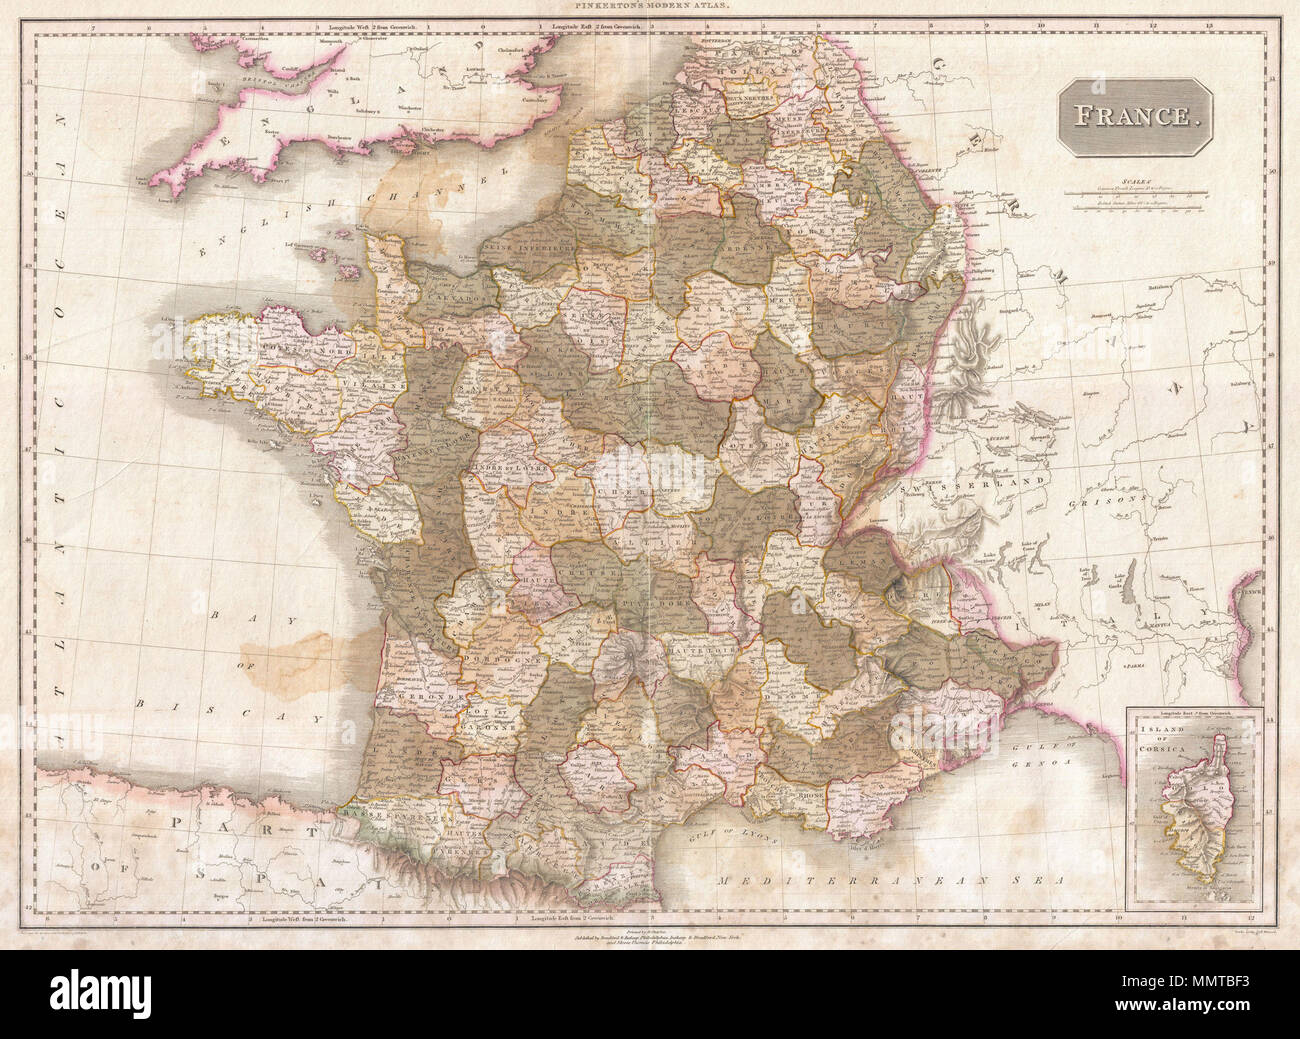 Englisch: Pinkertons außerordentliche 1818 Karte von Frankreich. Deckt das  gesamte Land von der Biskaya bis zum Englischen Kanal bis zum Mittelmeer,  an den Grenzen mit der Schweiz und Deutschland. Gezeichnet kurz